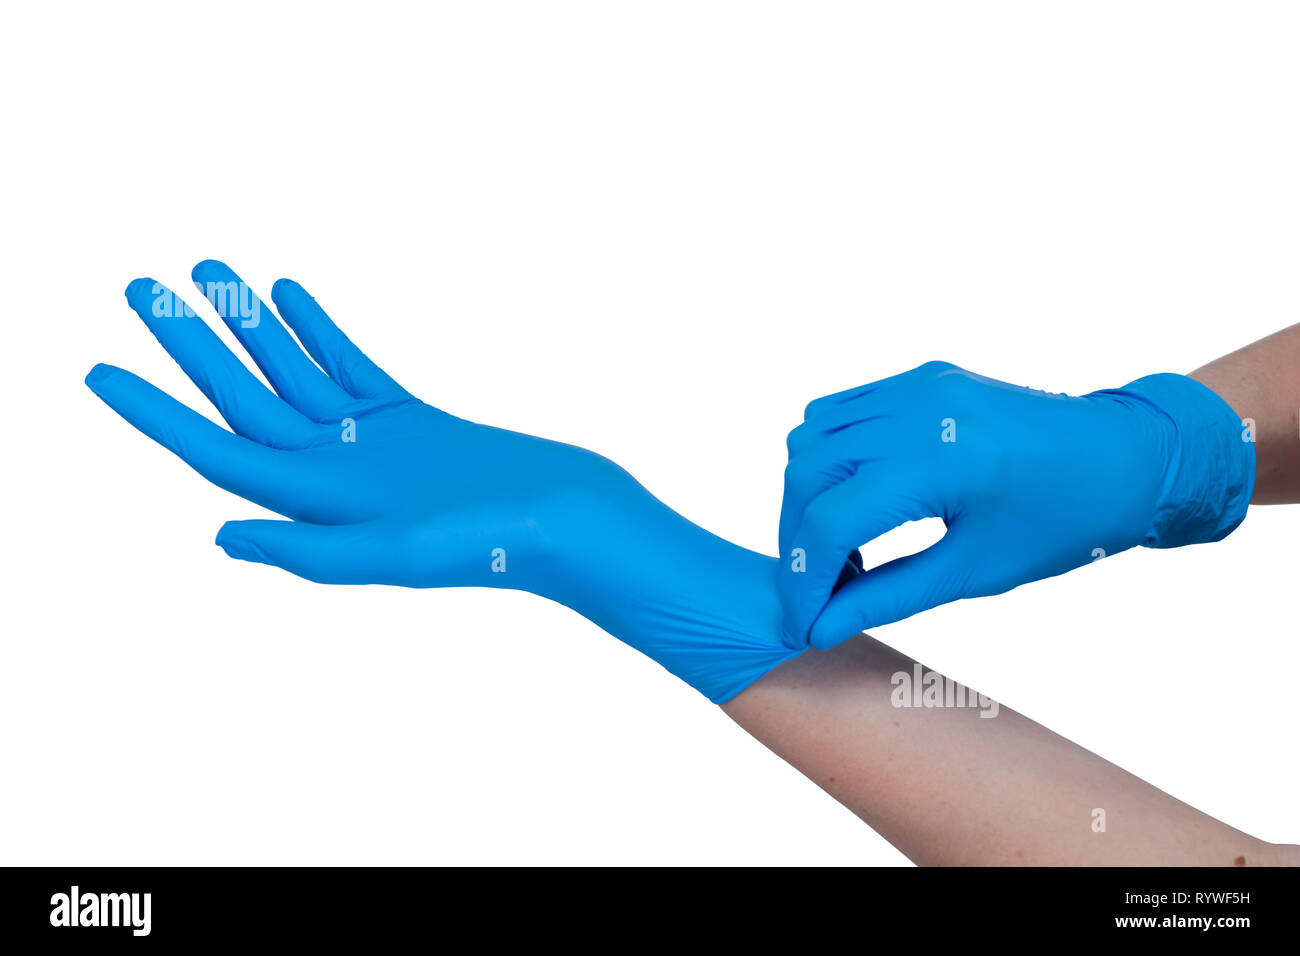 Hände in blau Arzt medizinische Latex Handschuhe auf weißem Hintergrund  Stockfotografie - Alamy